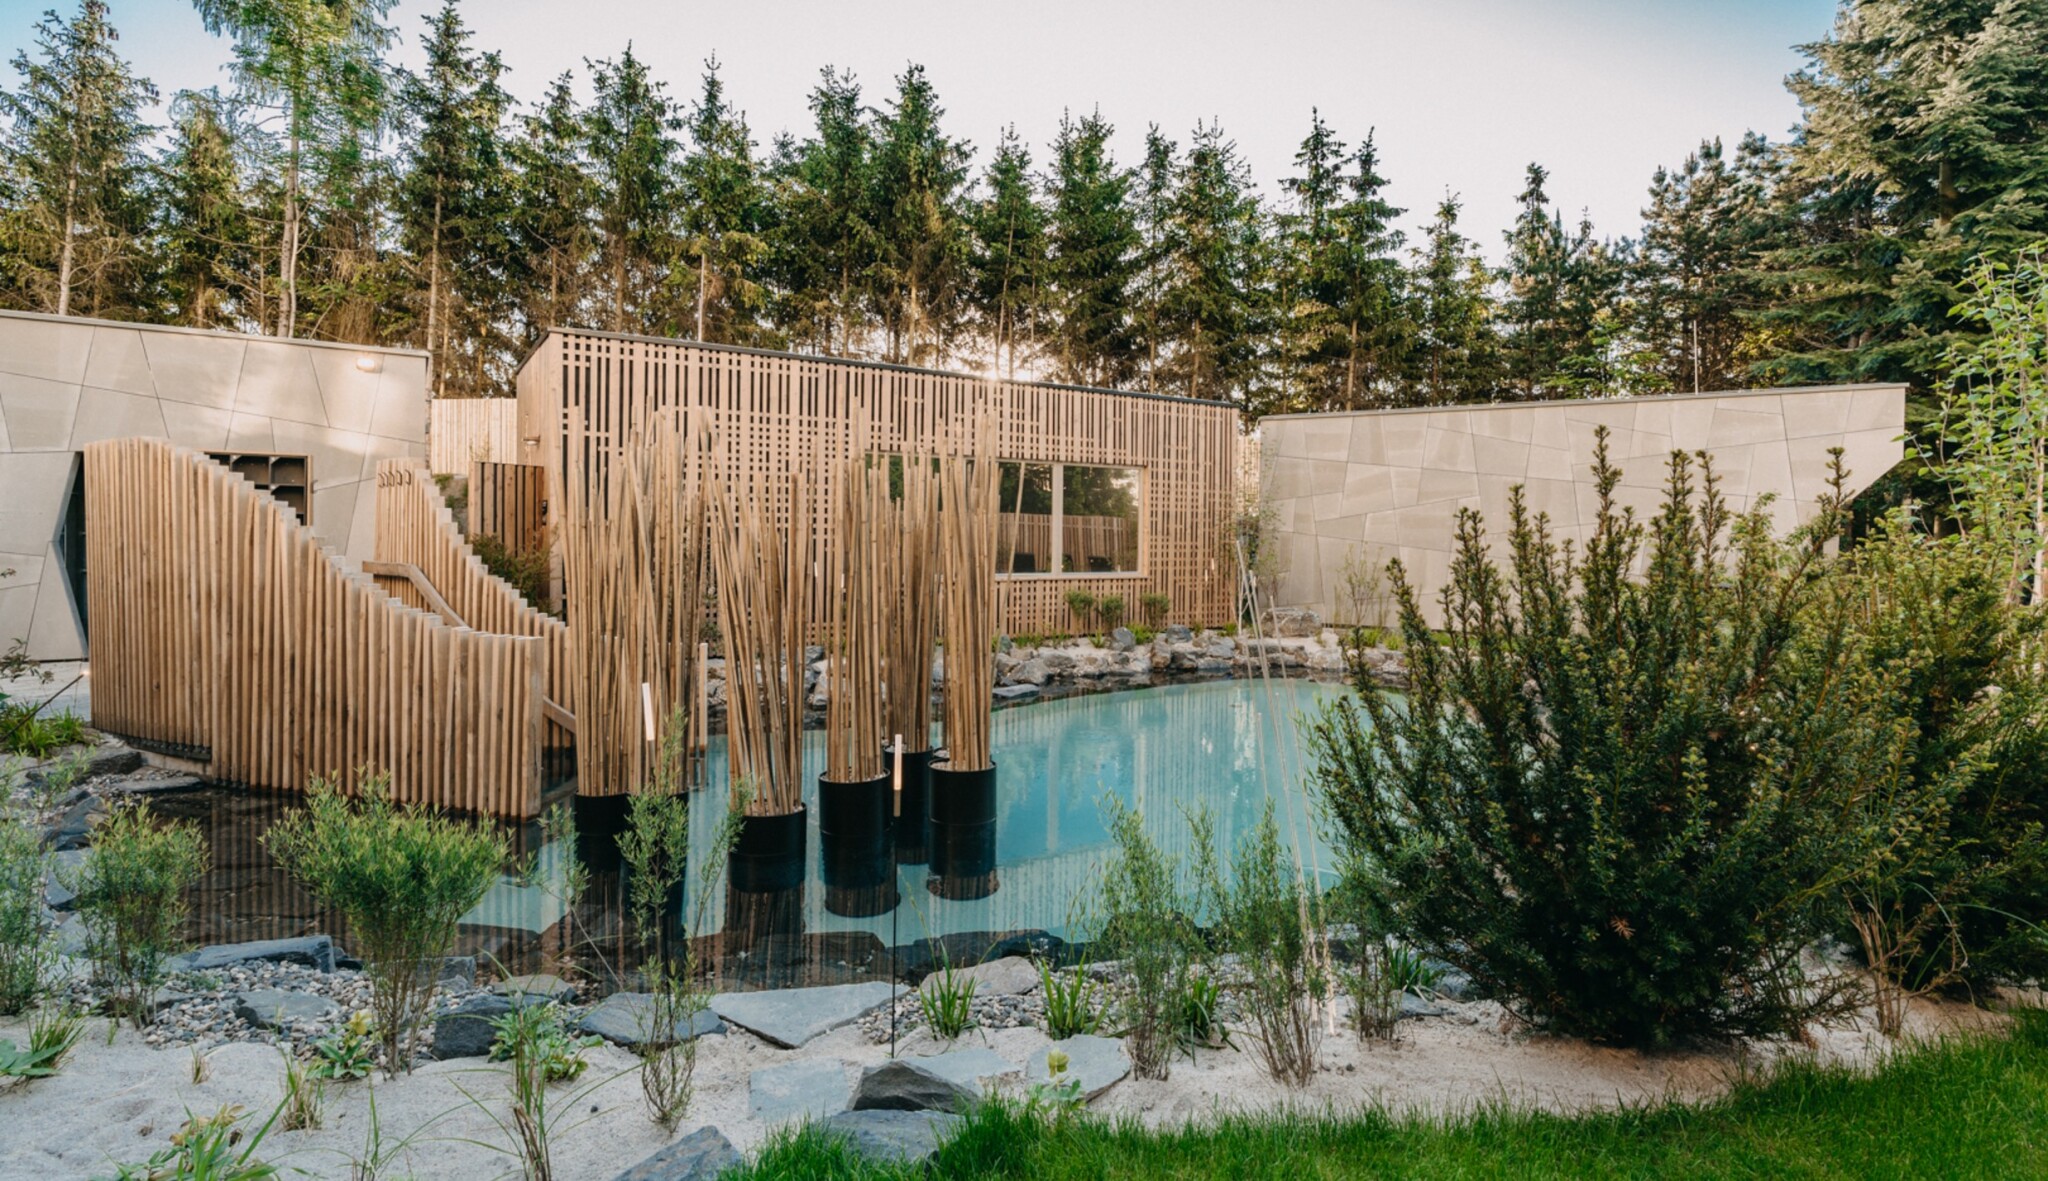 Tajemná zahrada plná saunových pokladů. U Prahy otevřelo luxusní wellness